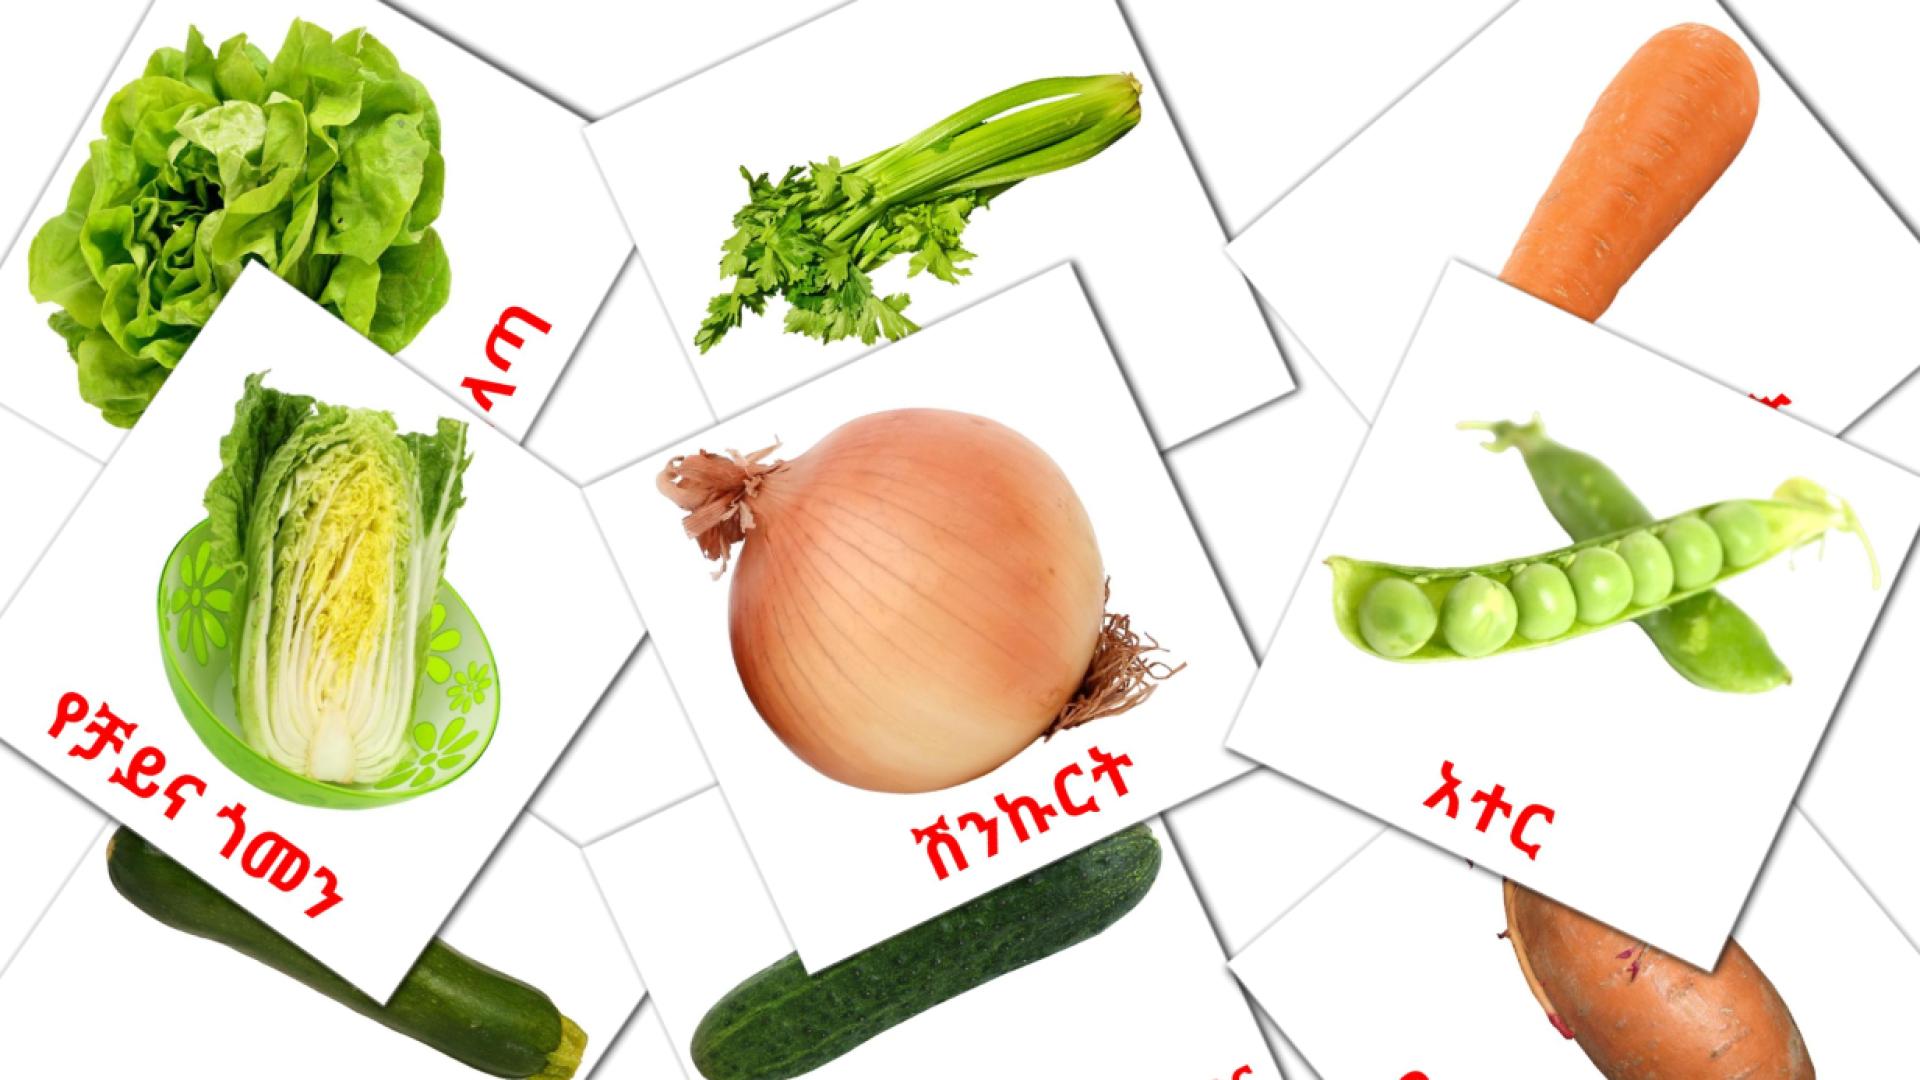 Les Légumes - cartes de vocabulaire amharique